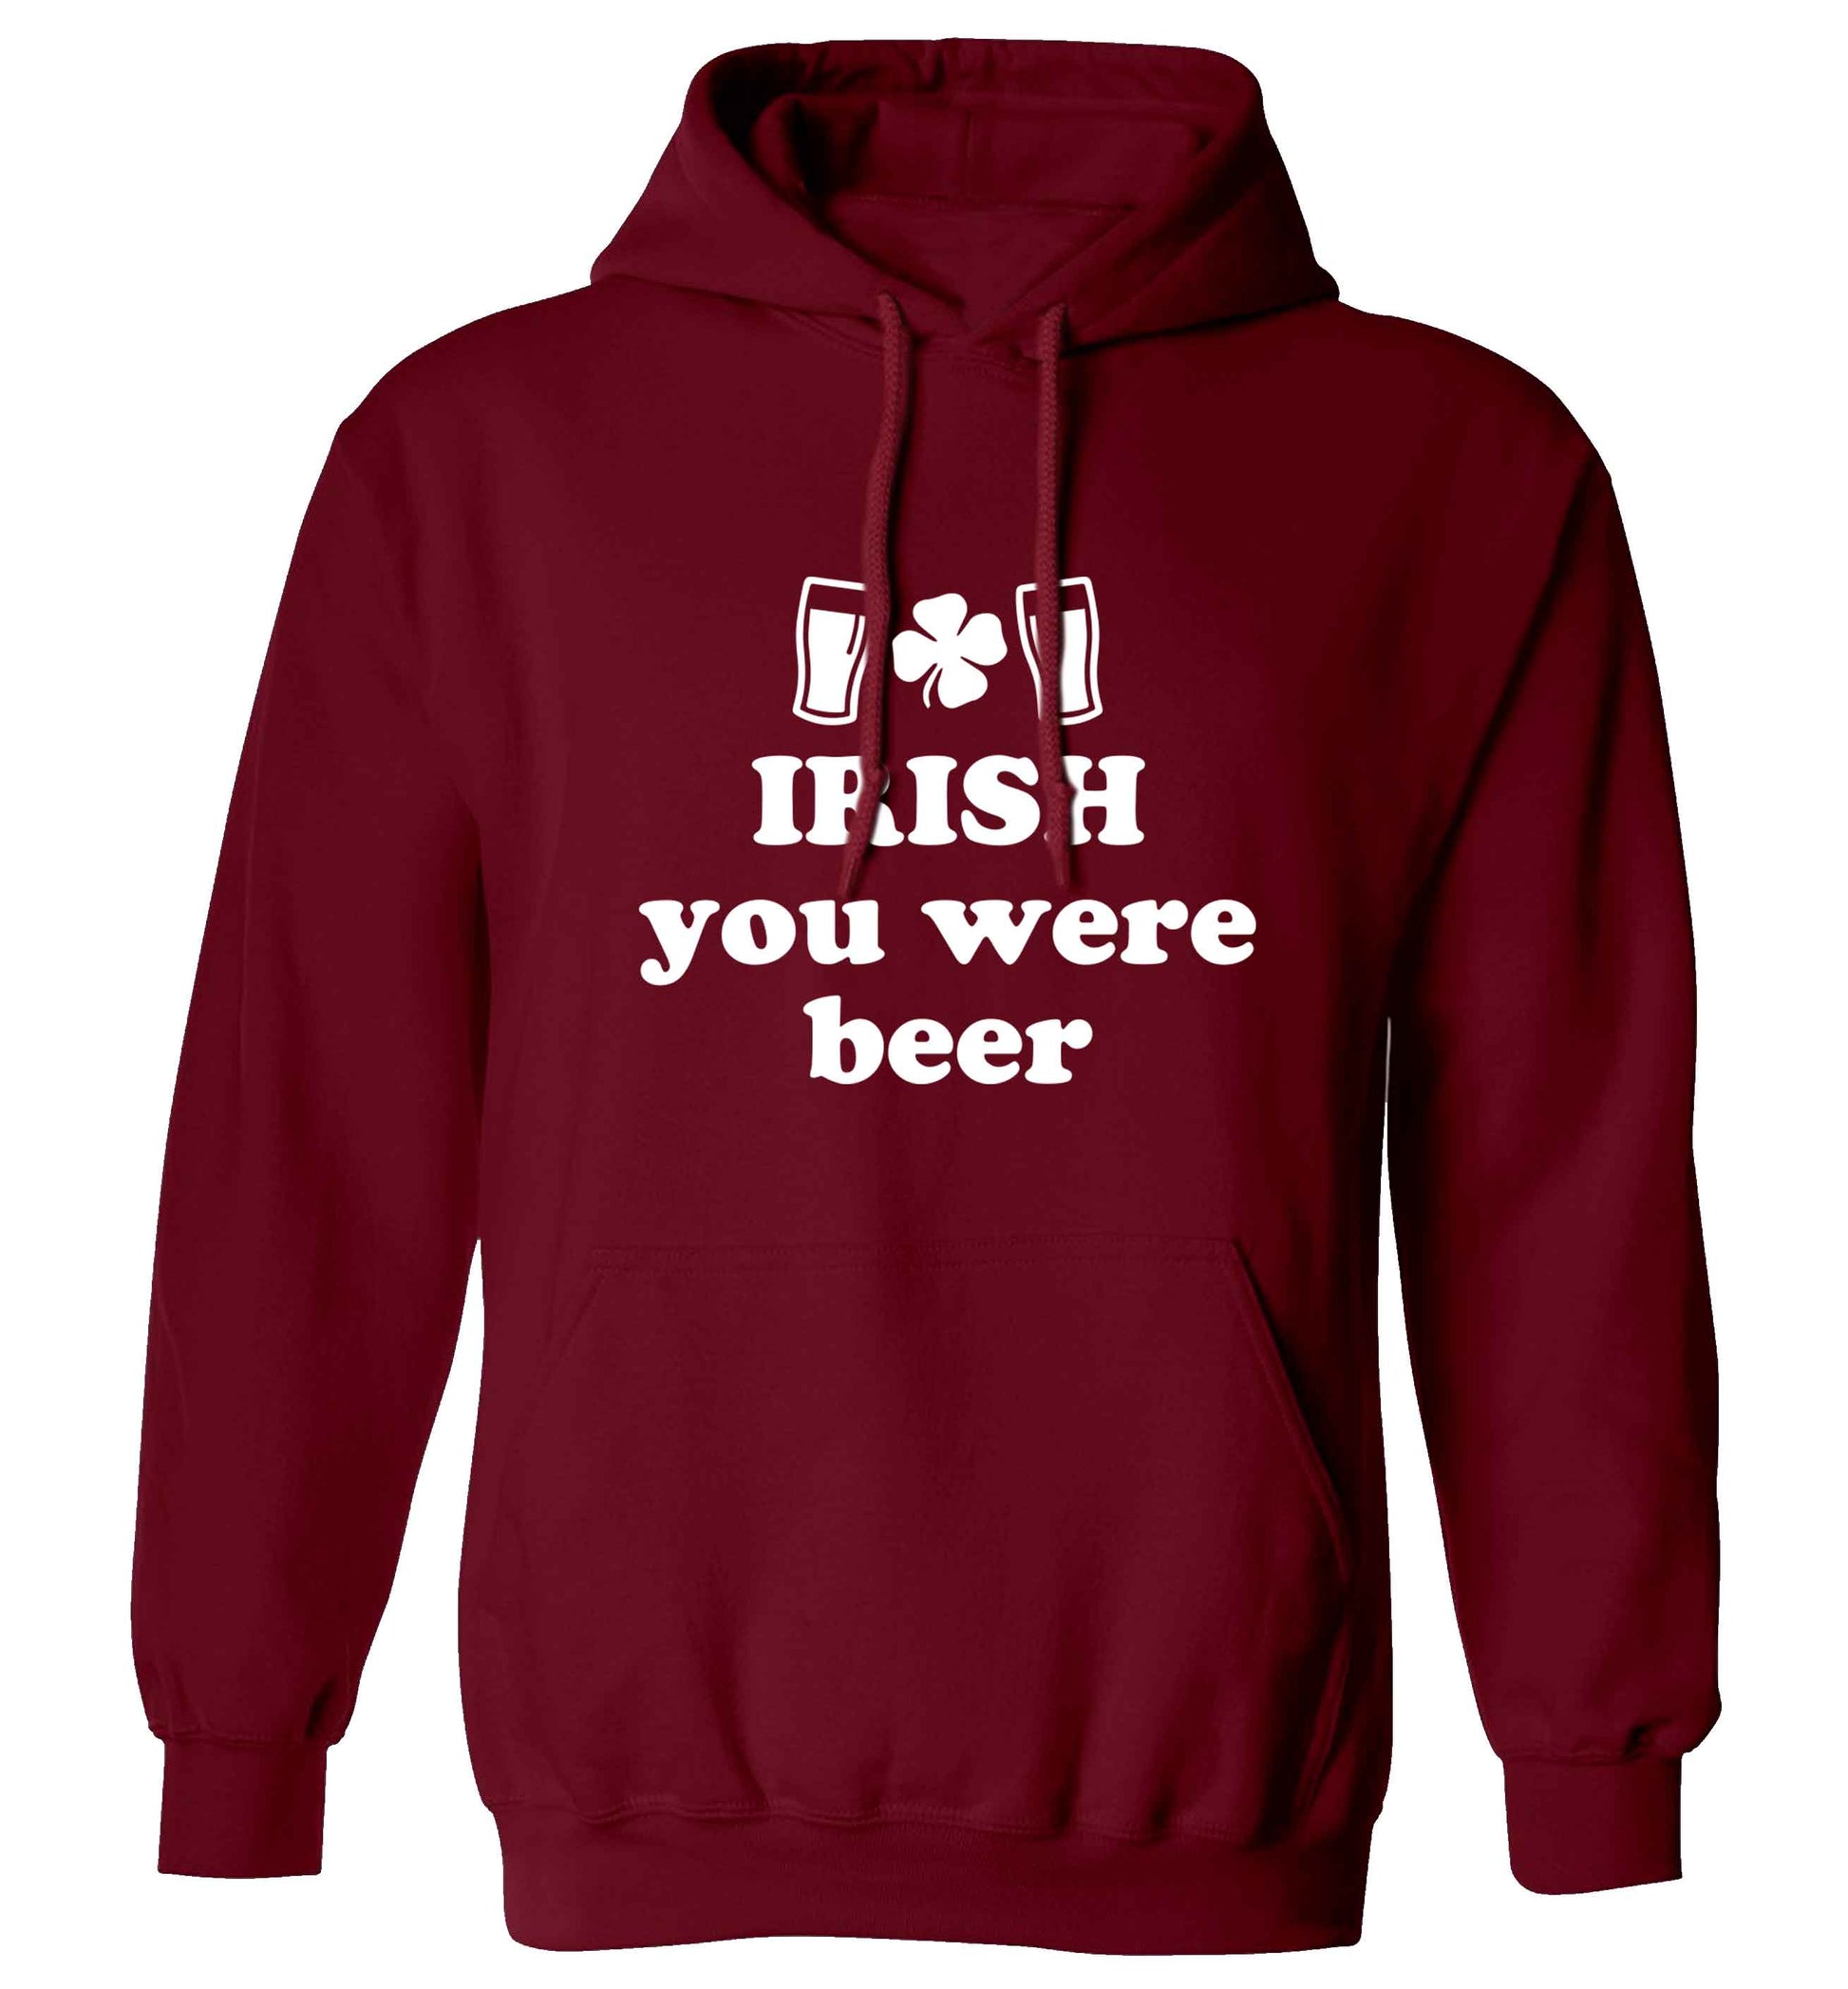 Irish you were beer adults unisex maroon hoodie 2XL